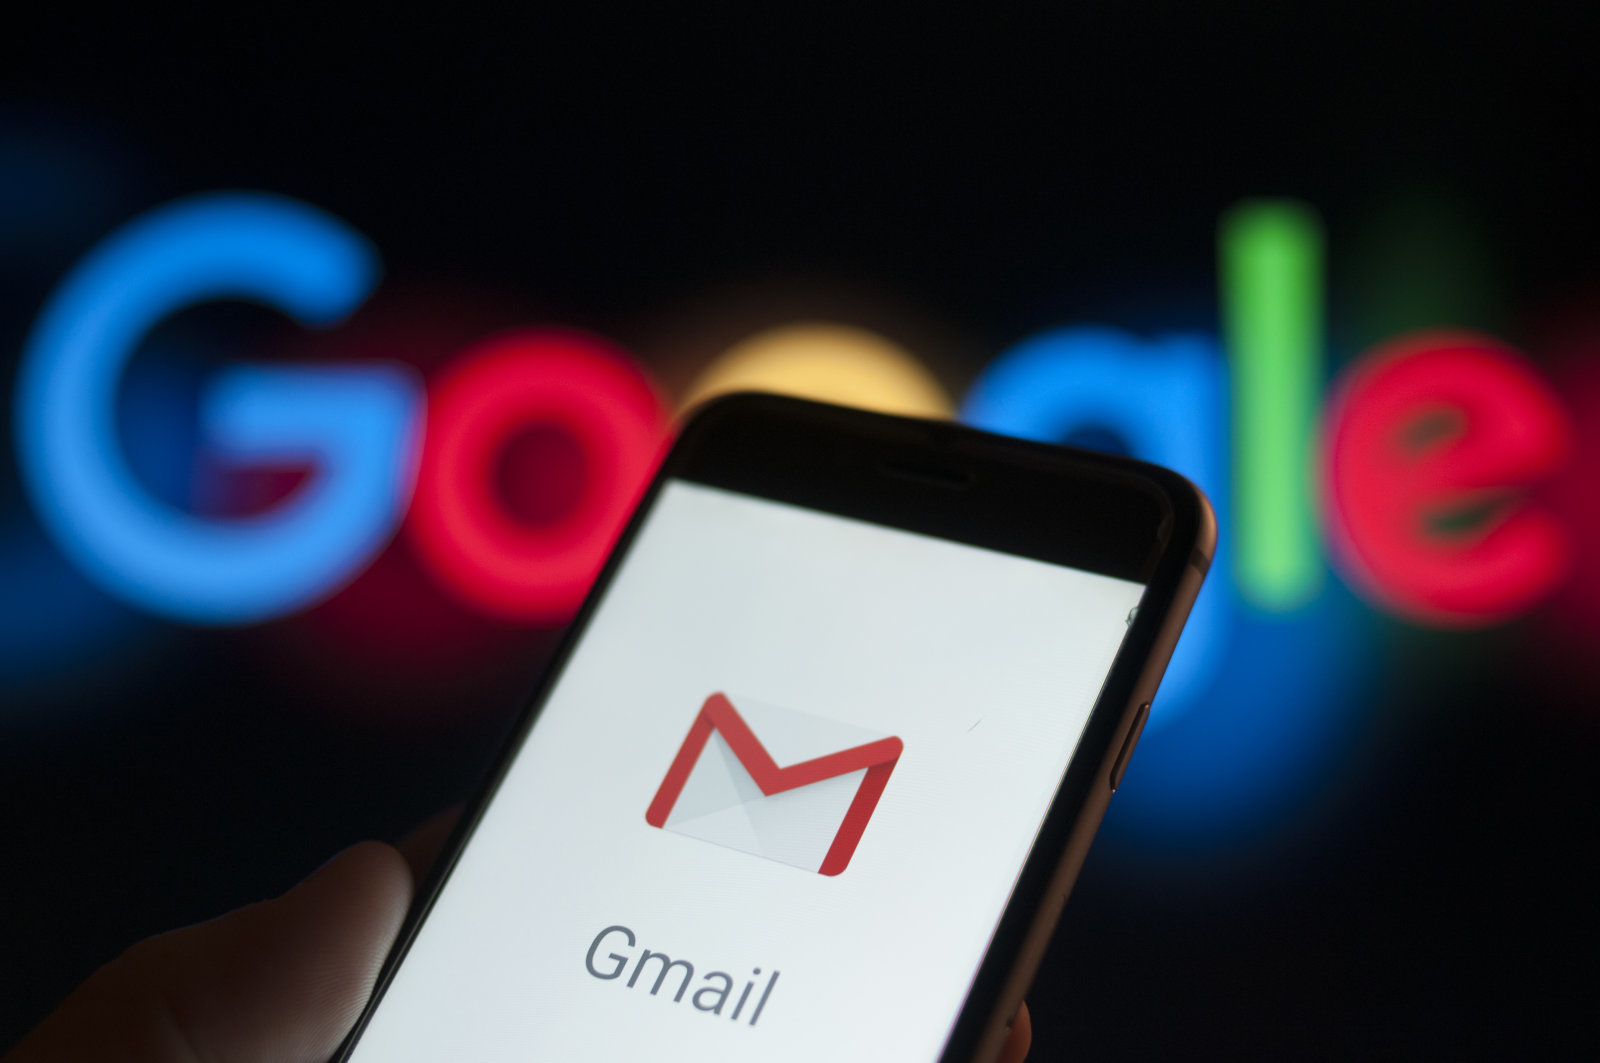 Google sẽ xoá tài khoản gmail không hoạt động trong 2 năm